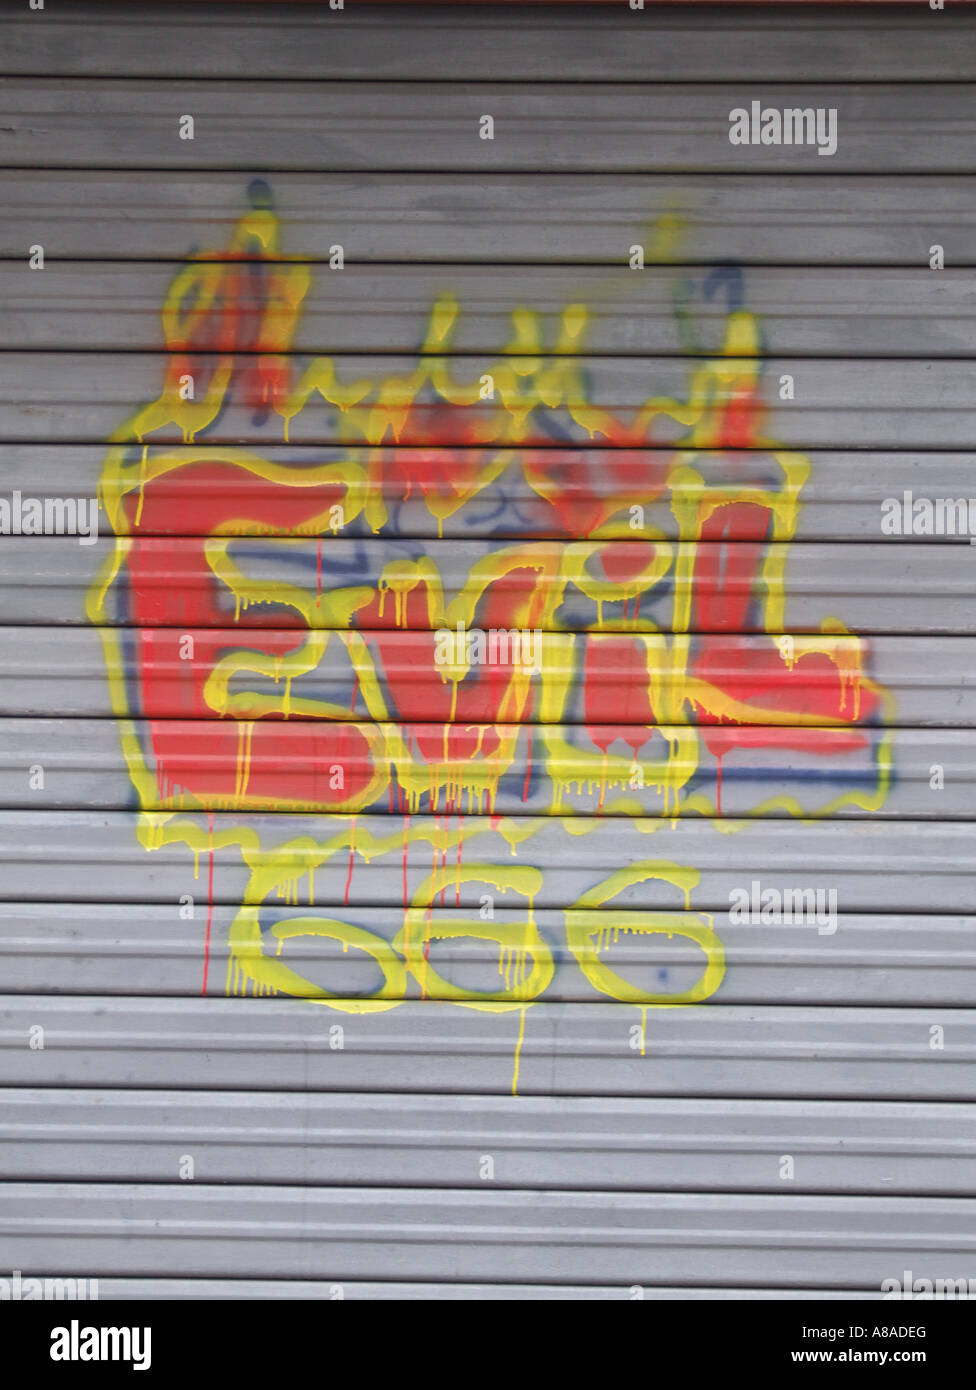 graffiti on close market stall shutter Stock Photo